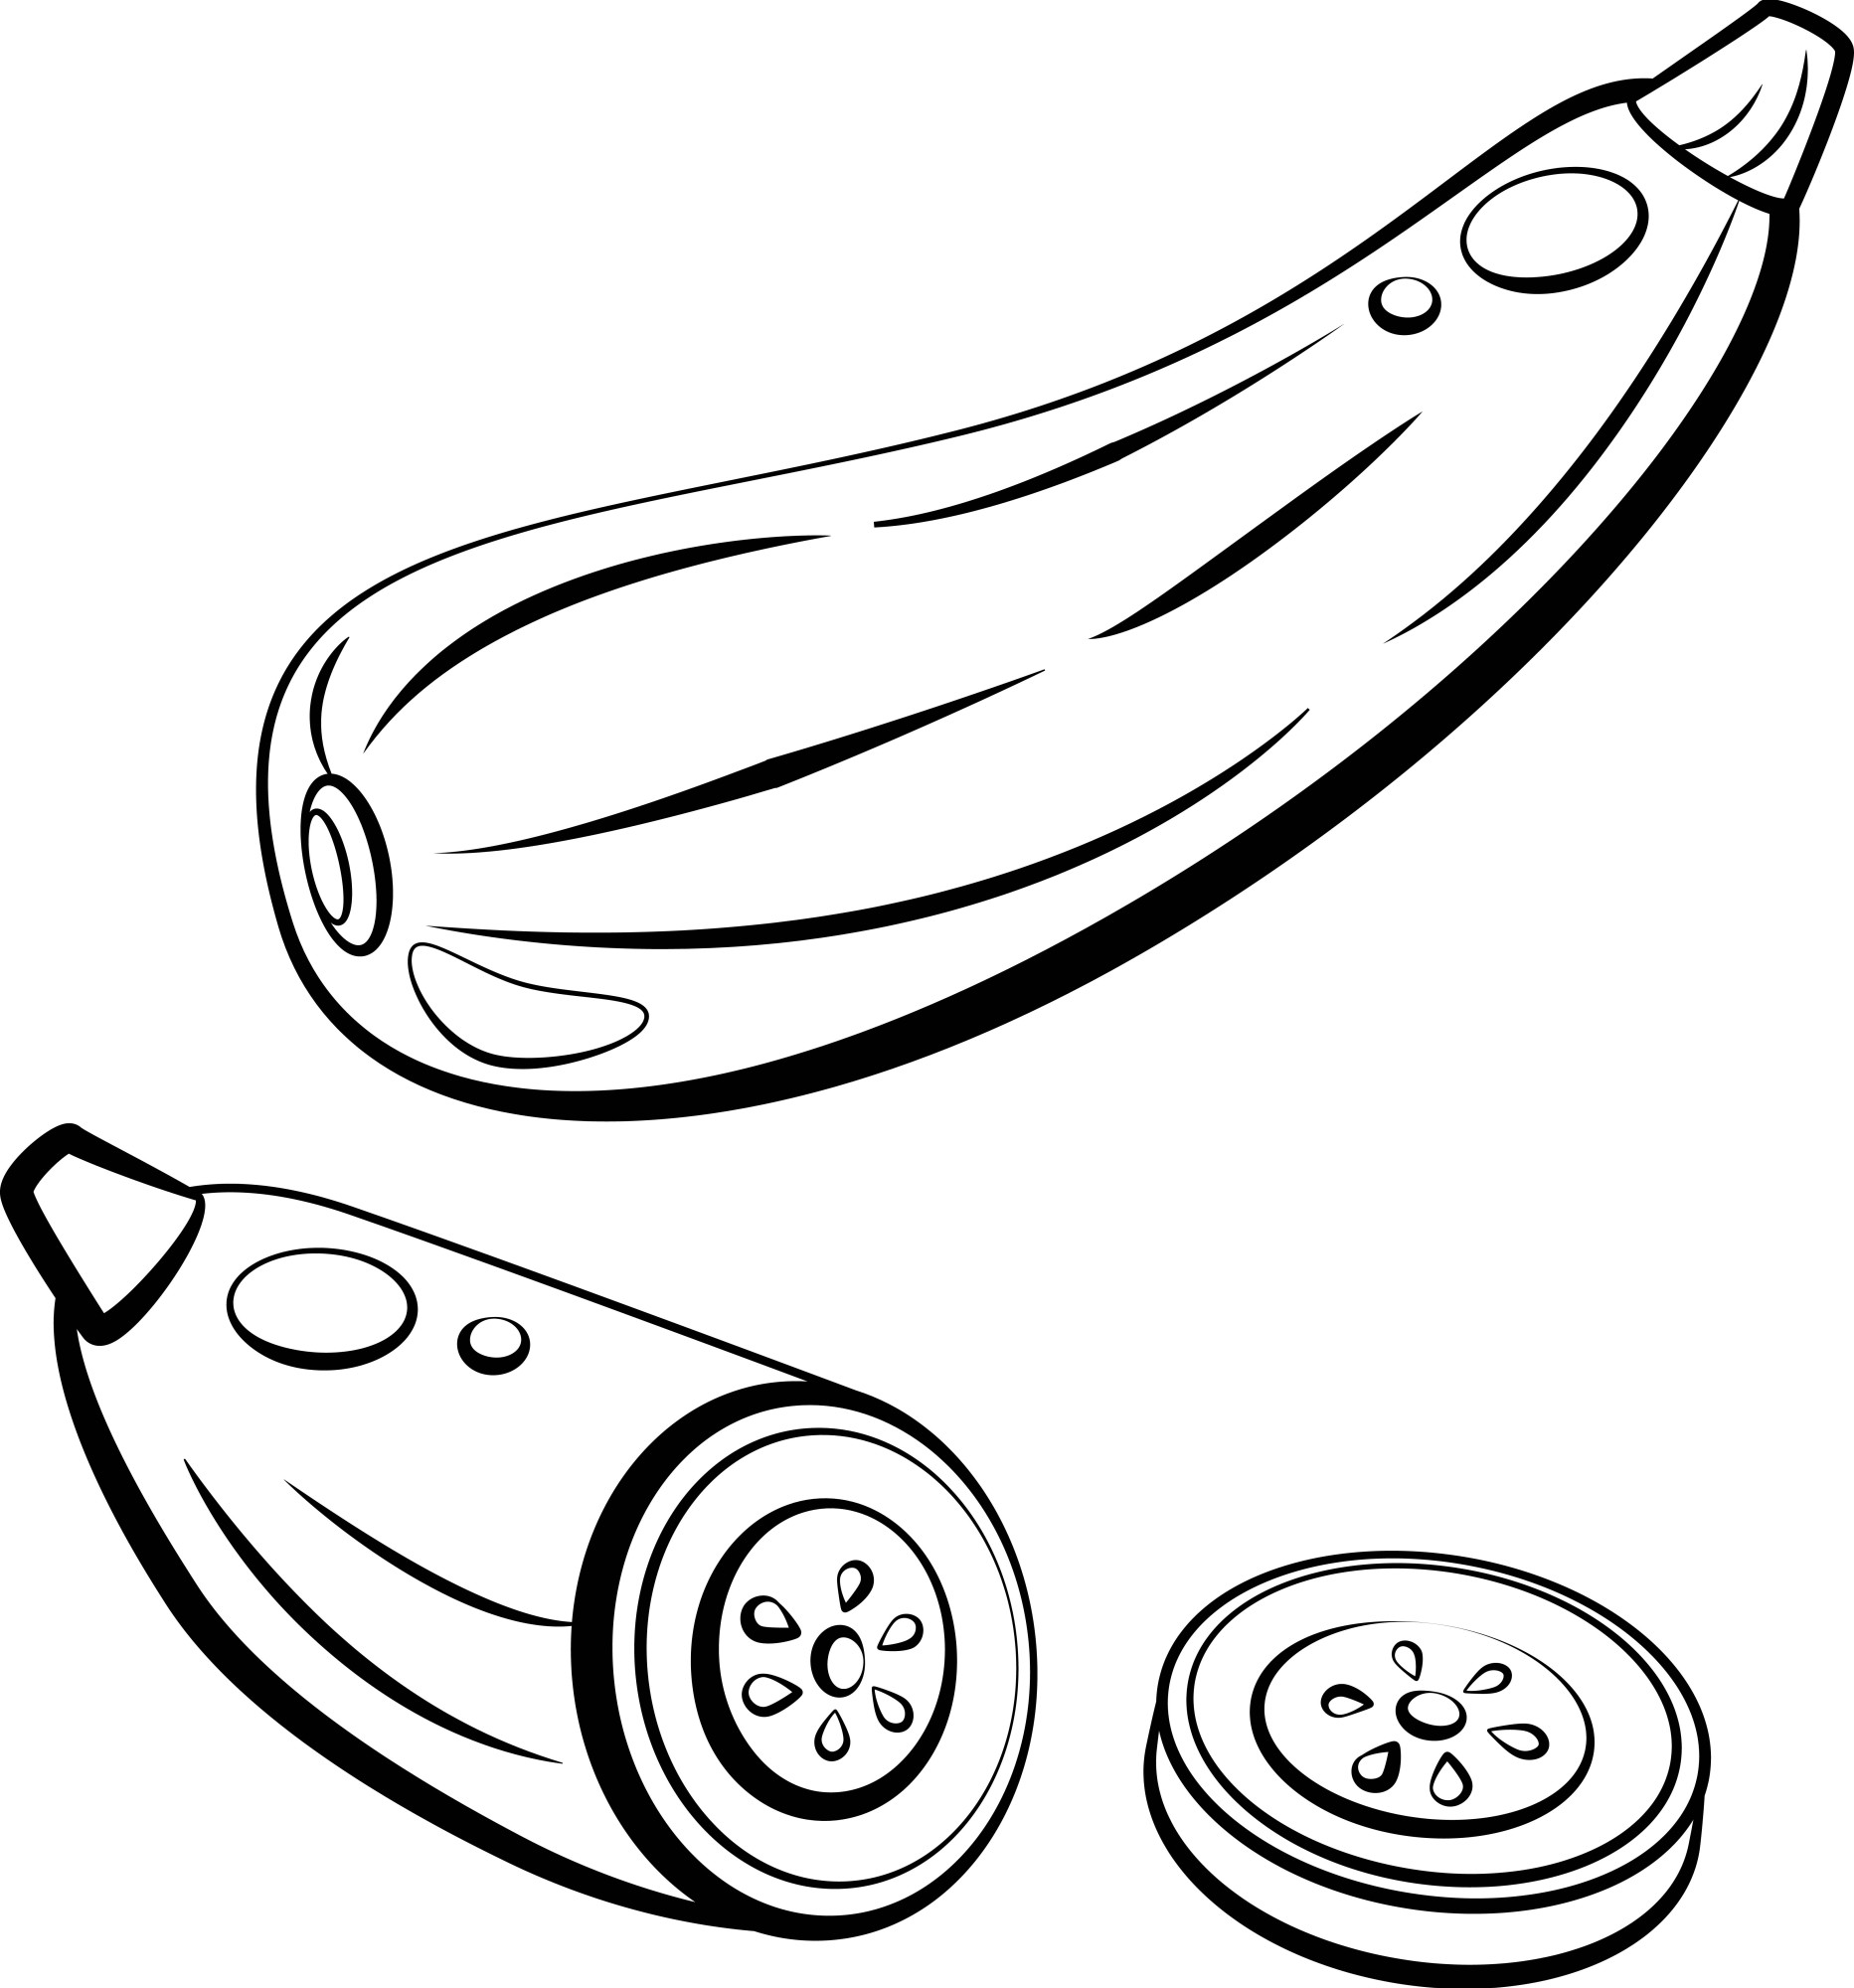 Раскраска для детей: спелый кабачок и половинка с ломтиками